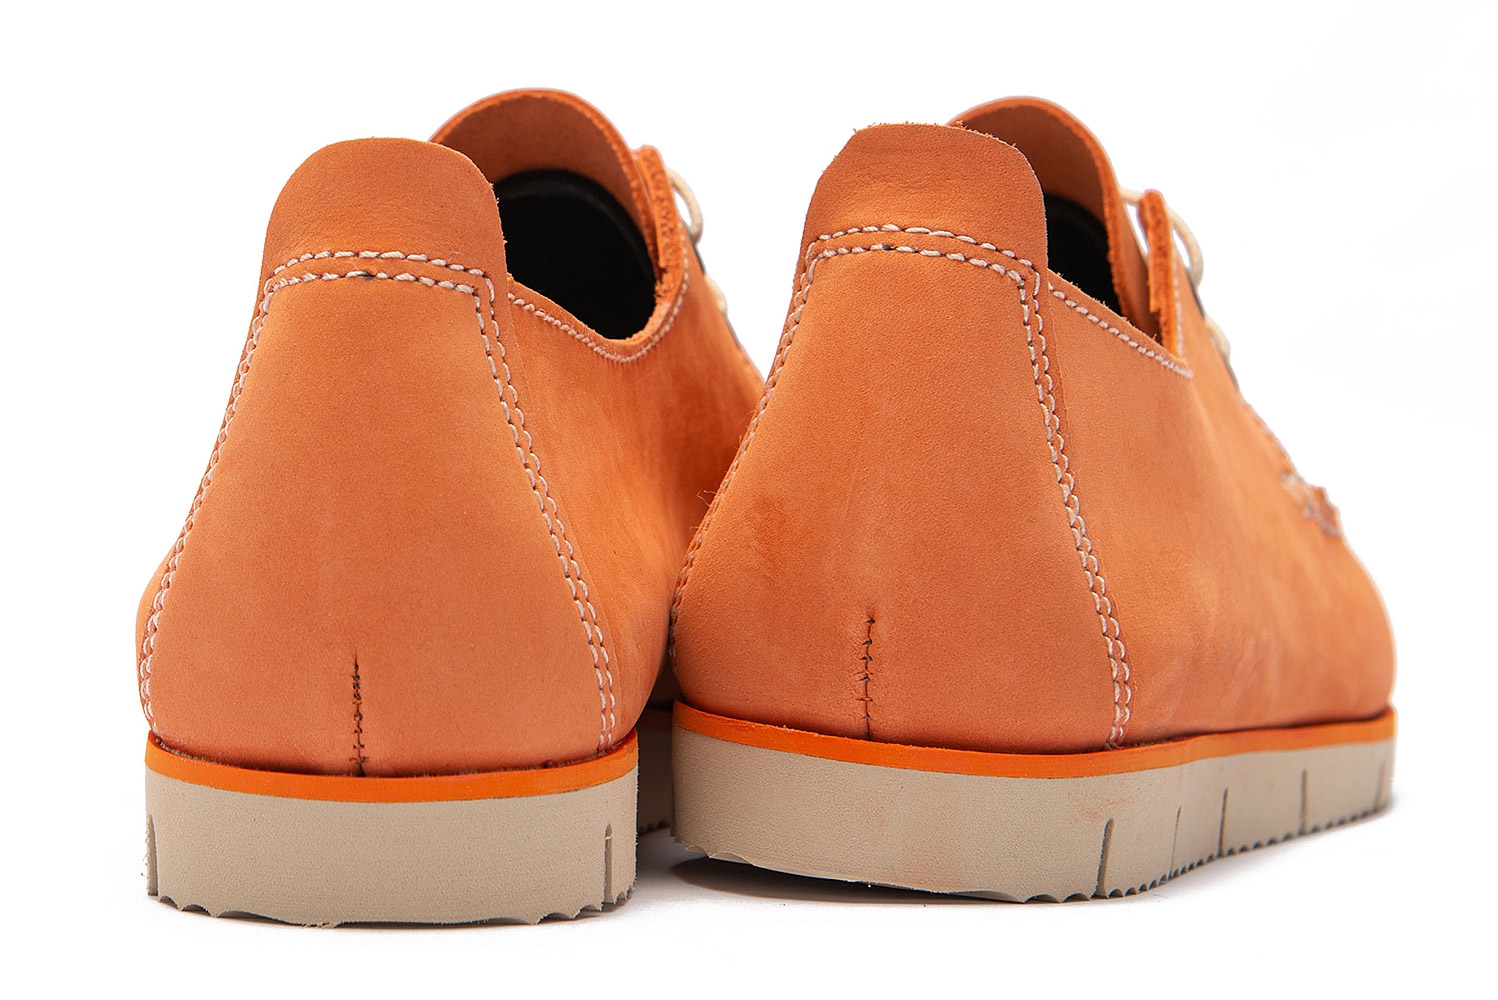 Boat shoes oranj piele nabuc 2